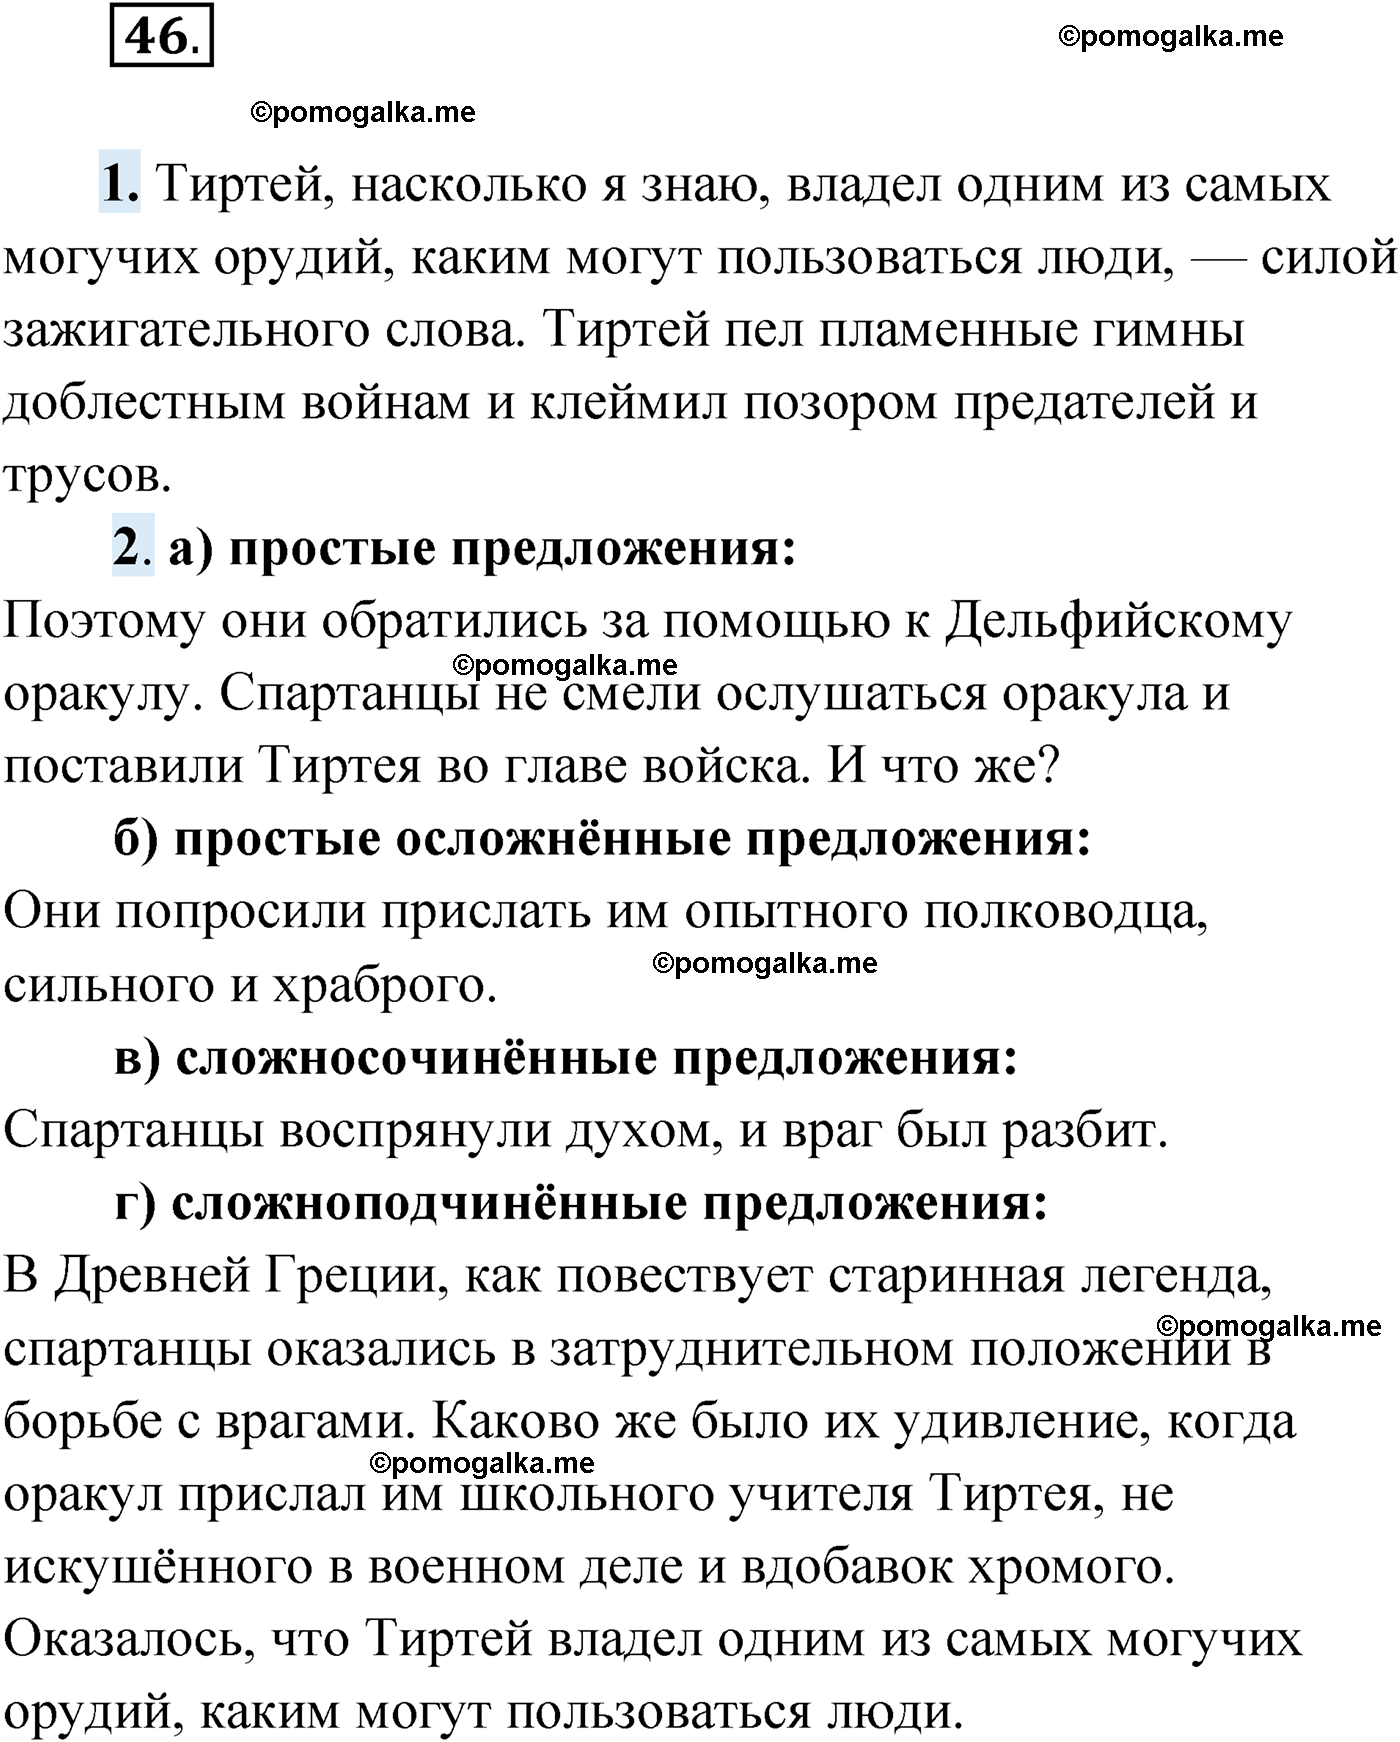 упражнение №46 русский язык 9 класс Мурина 2019 год